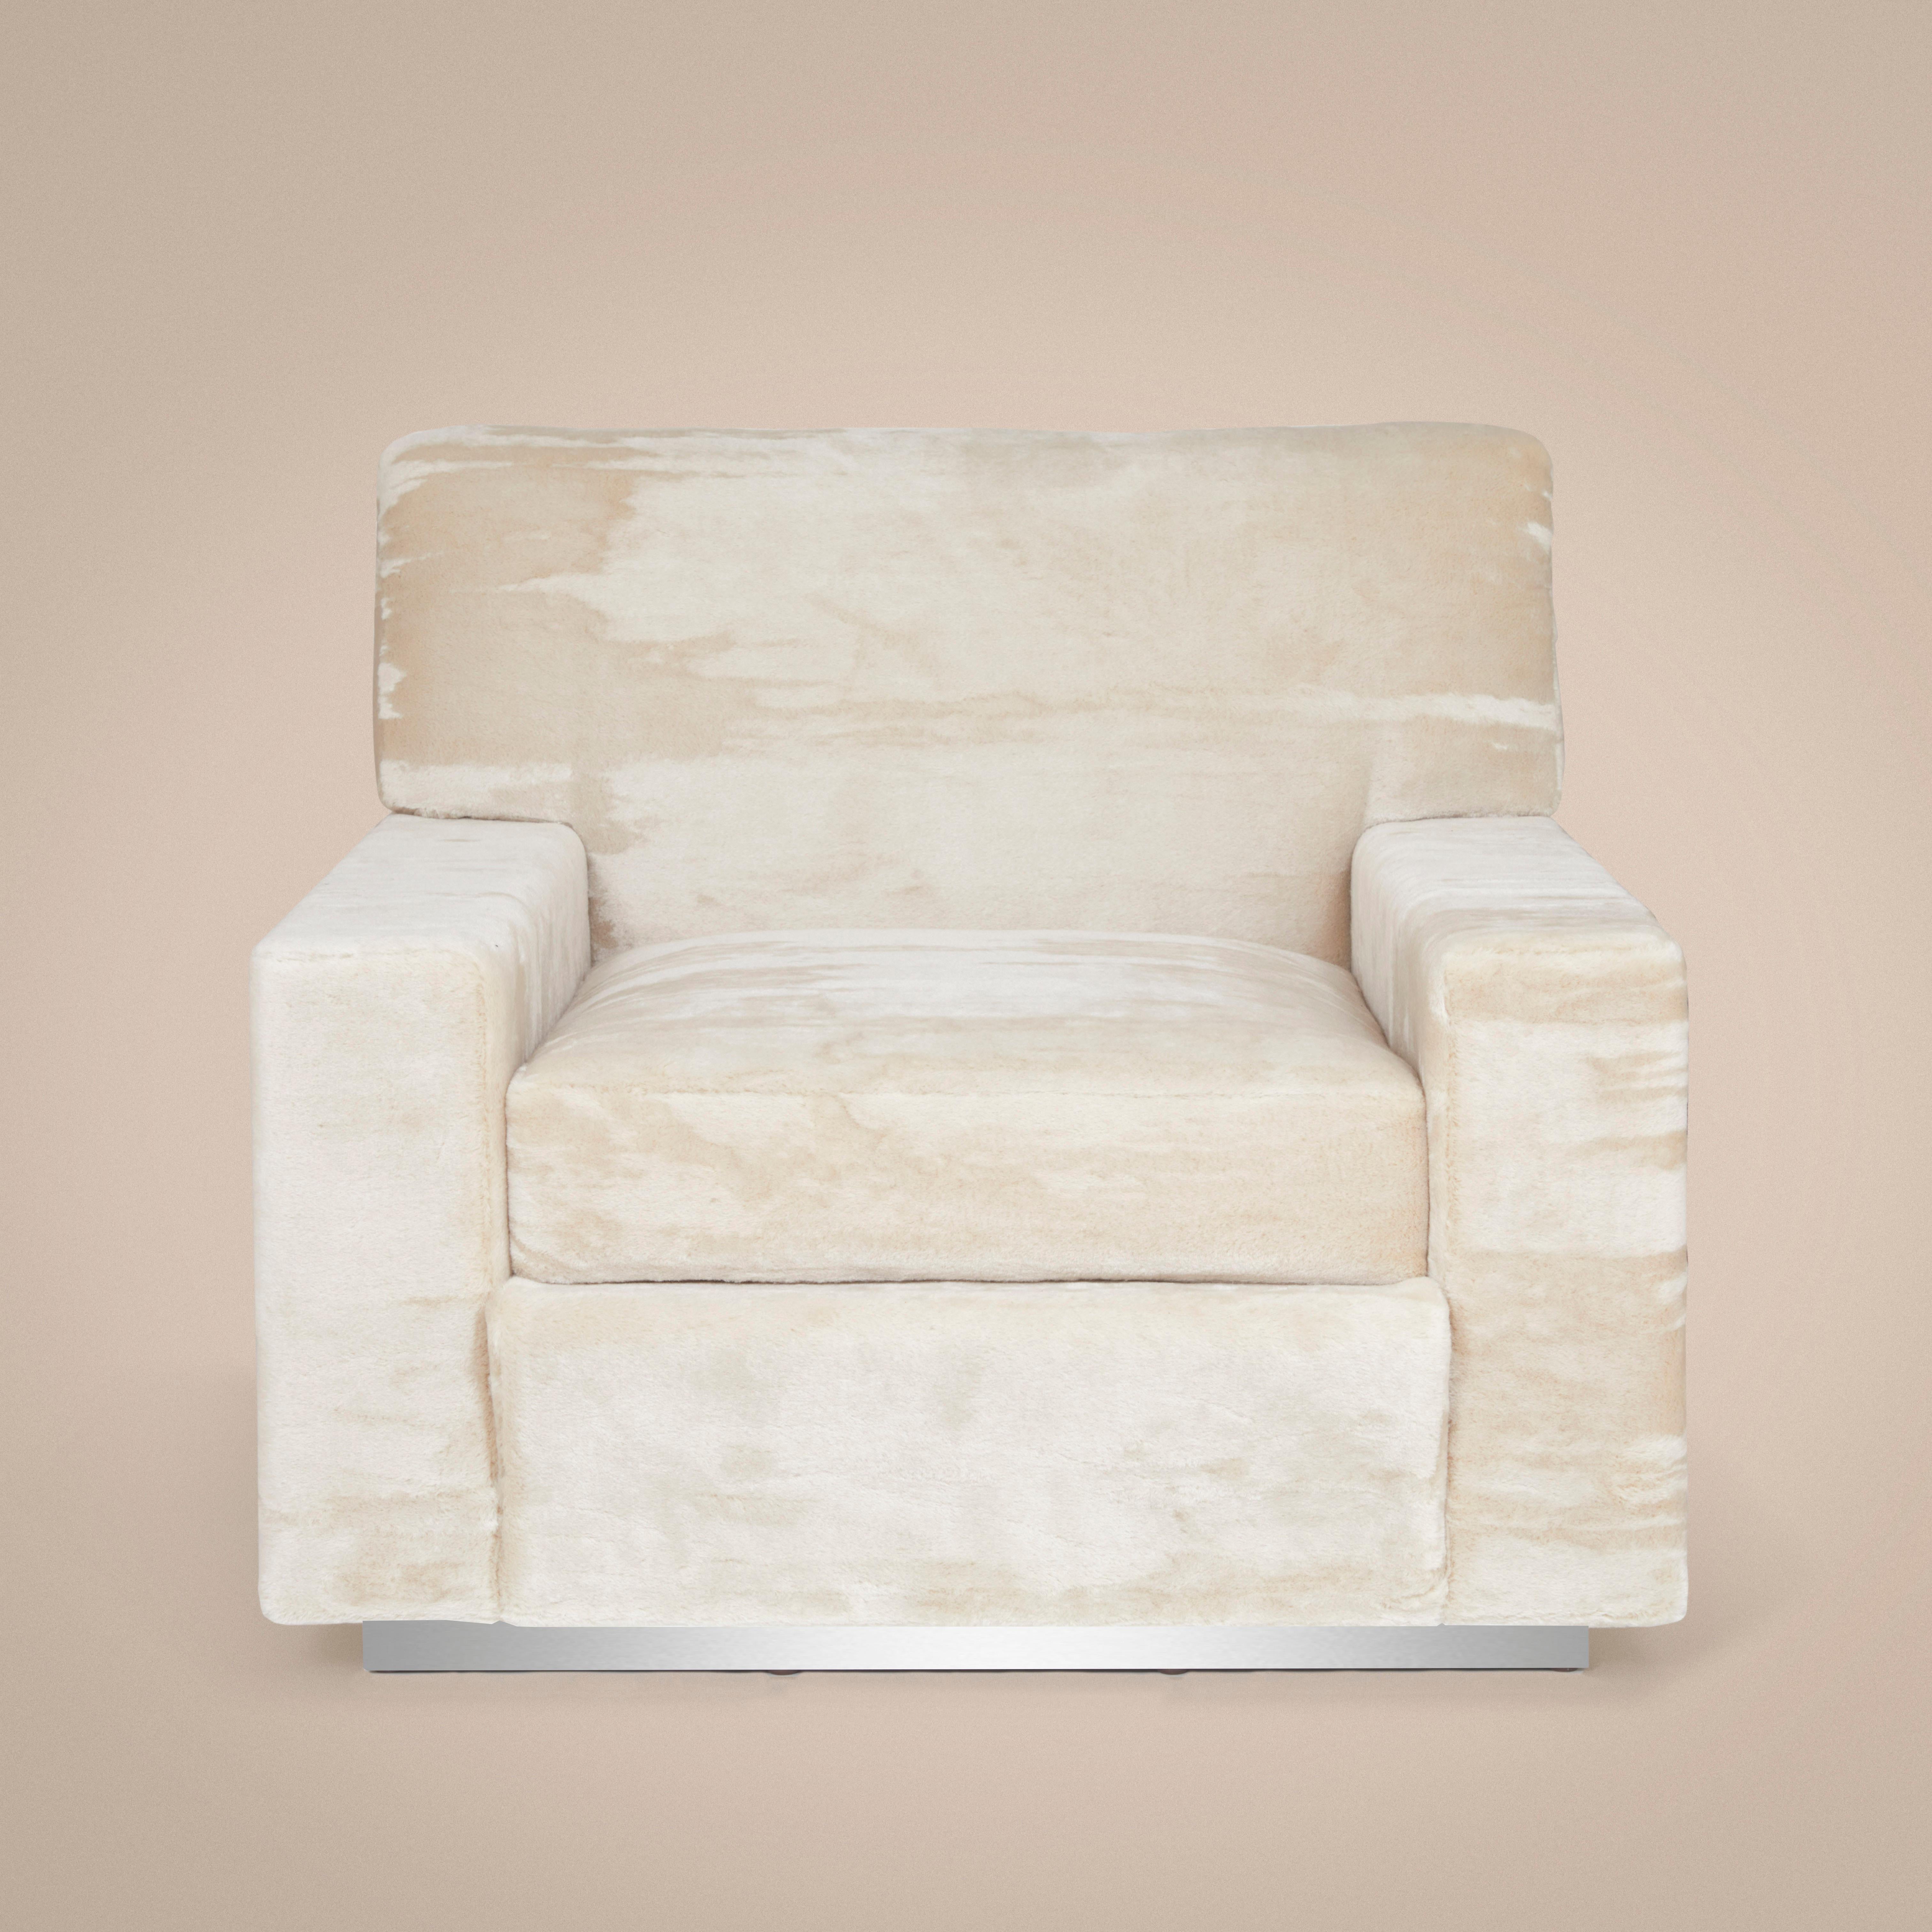 Sessel von Laura Gonzalez, gepolstert mit unregelmäßigem Mohair-Samt des italienischen Maison DEDAR. Maßgeschneidertes Aussehen, unglaublich bequeme Polsterung und weiche Struktur aus nicht verformbarem Schaumstoff, mit wellenförmiger Rückenlehne